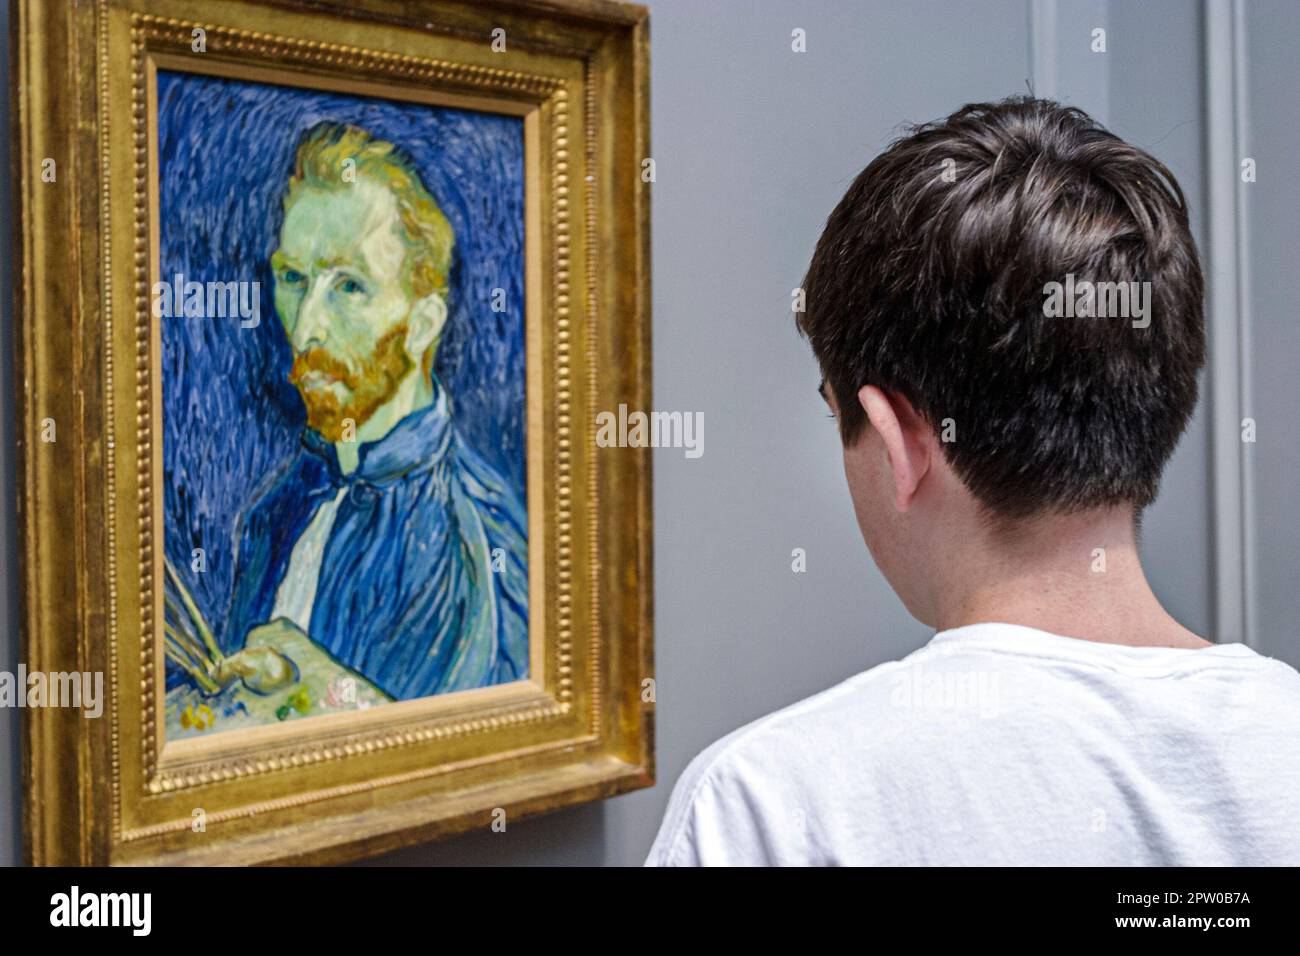 Washington DC,National Gallery of Art,Vincent van Gogh peinture,teen boy regarde auto portrait, Banque D'Images